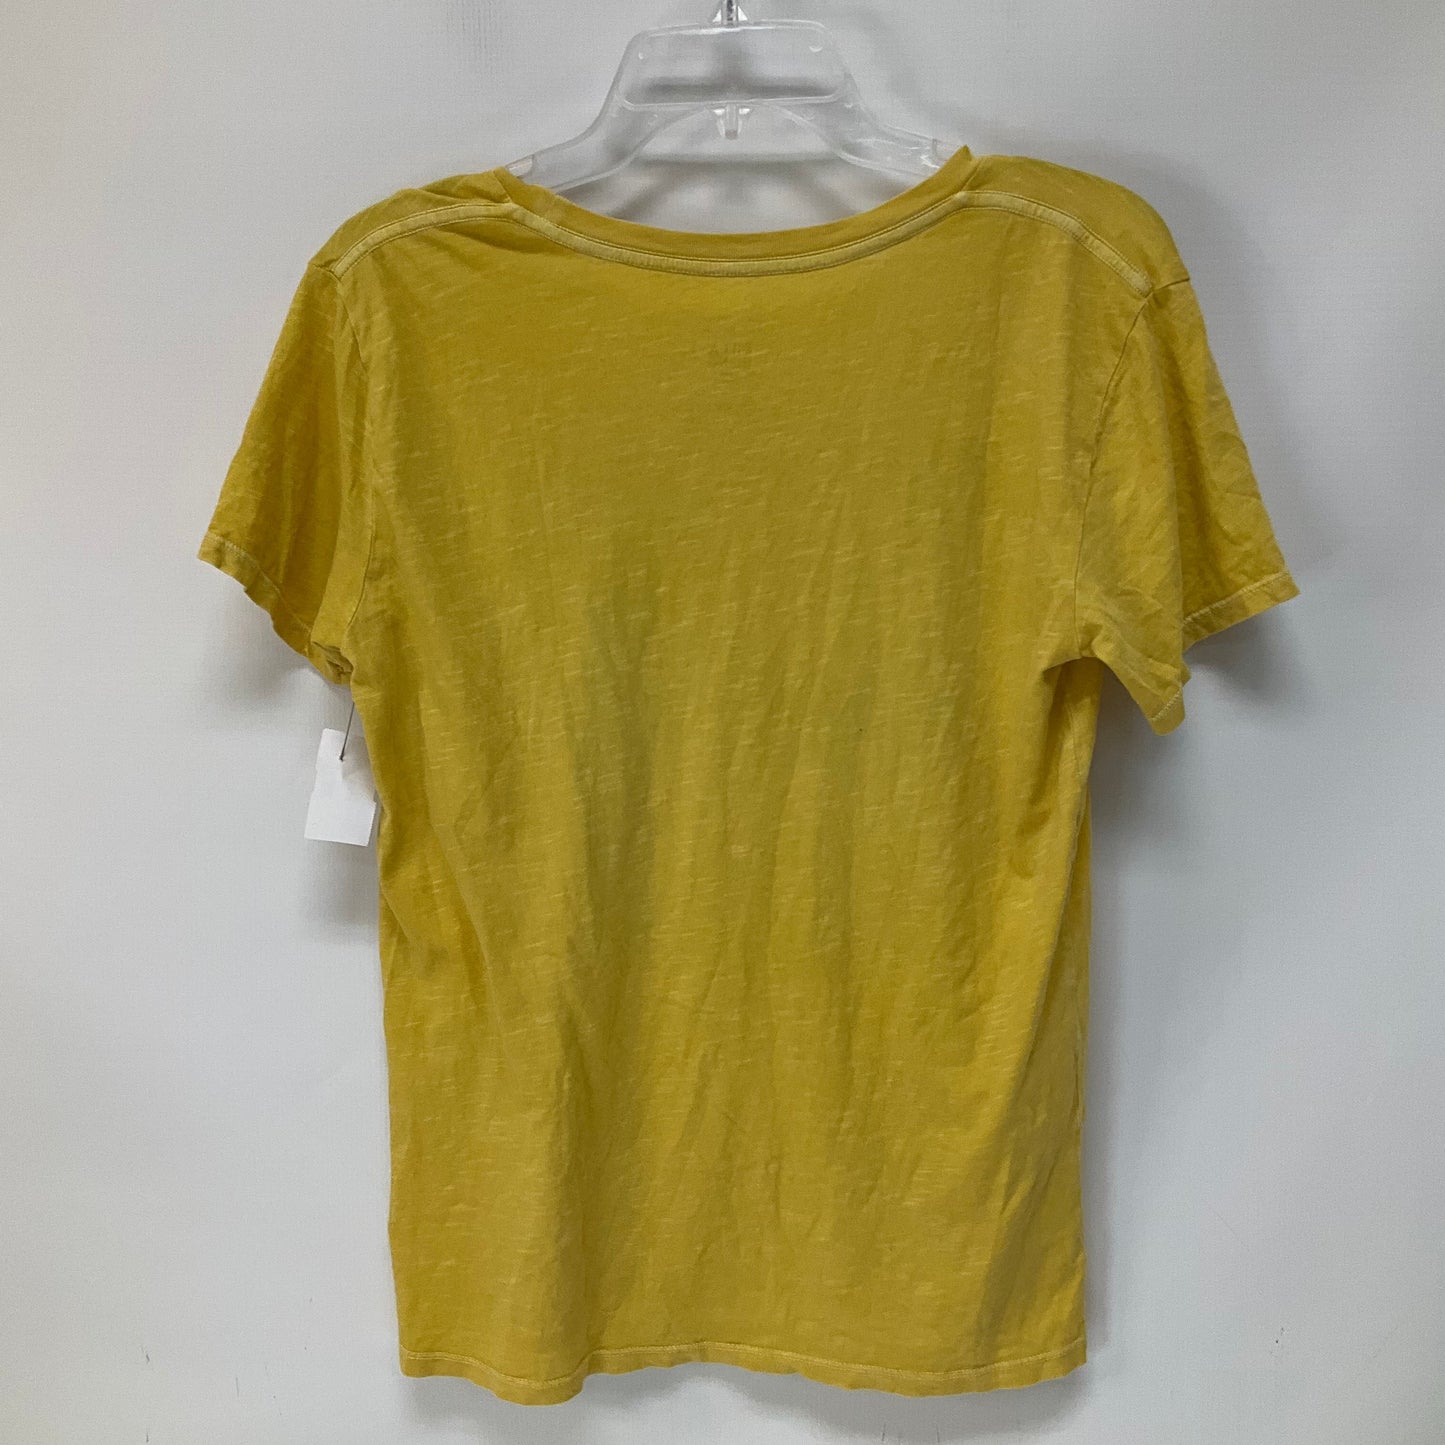 Yellow Top Short Sleeve Billabong, Size S